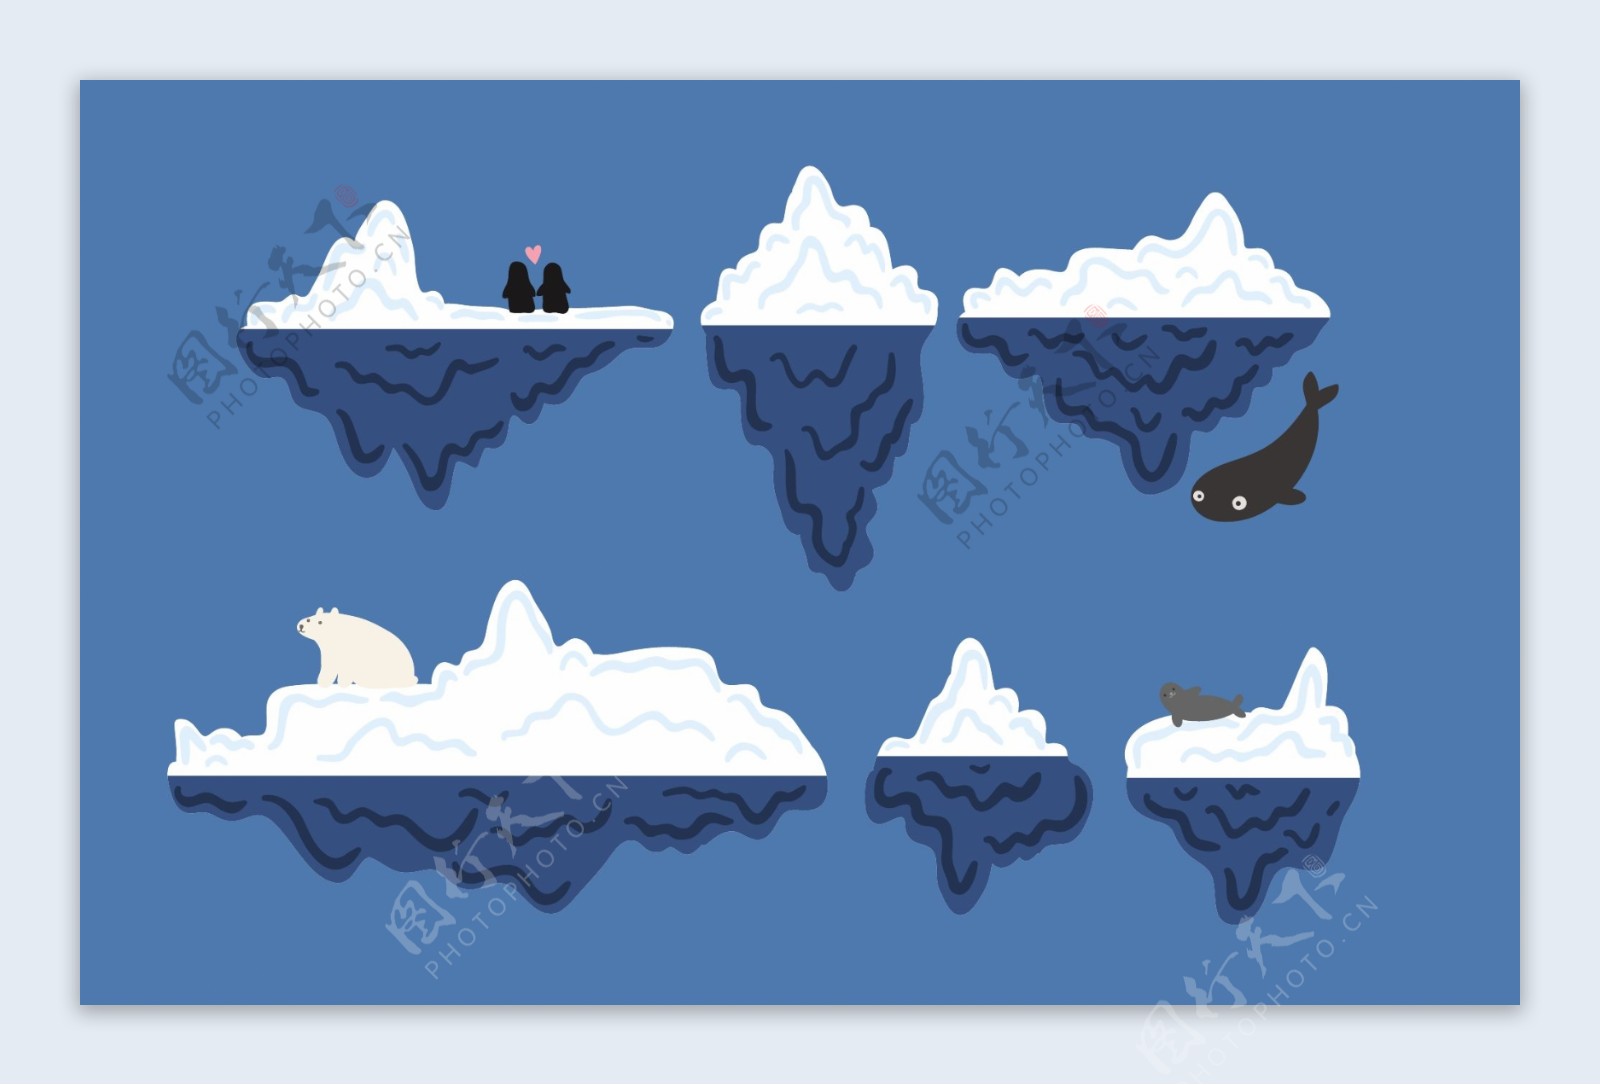 6款卡通冰川和北极熊企鹅设计矢量素材